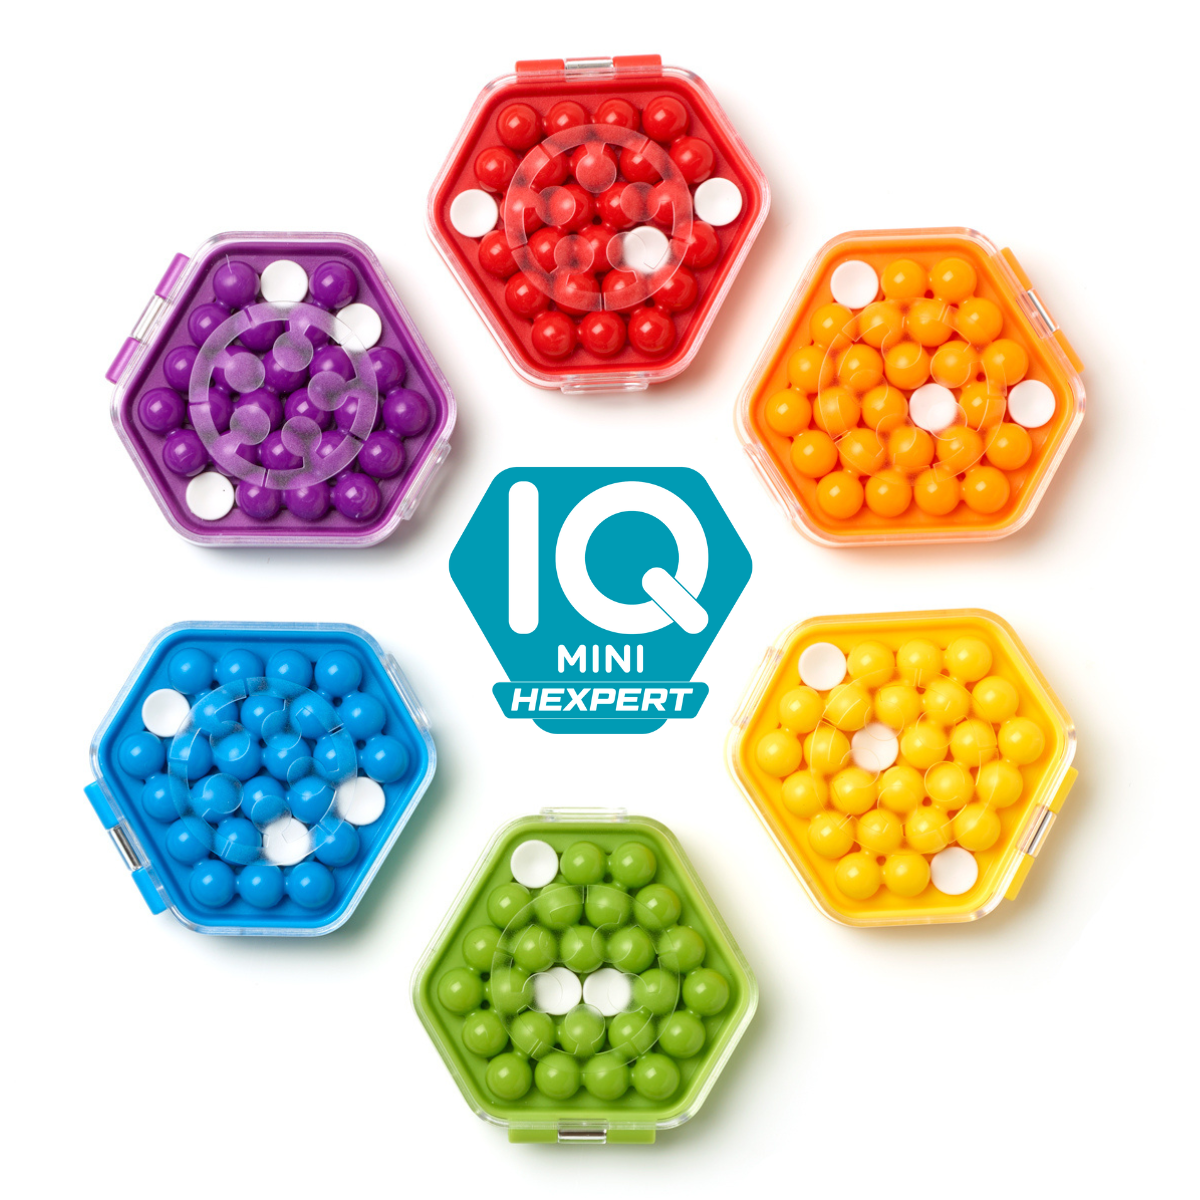 Iuvi Games: IQ mini hexpert smart games IQ puzzle game